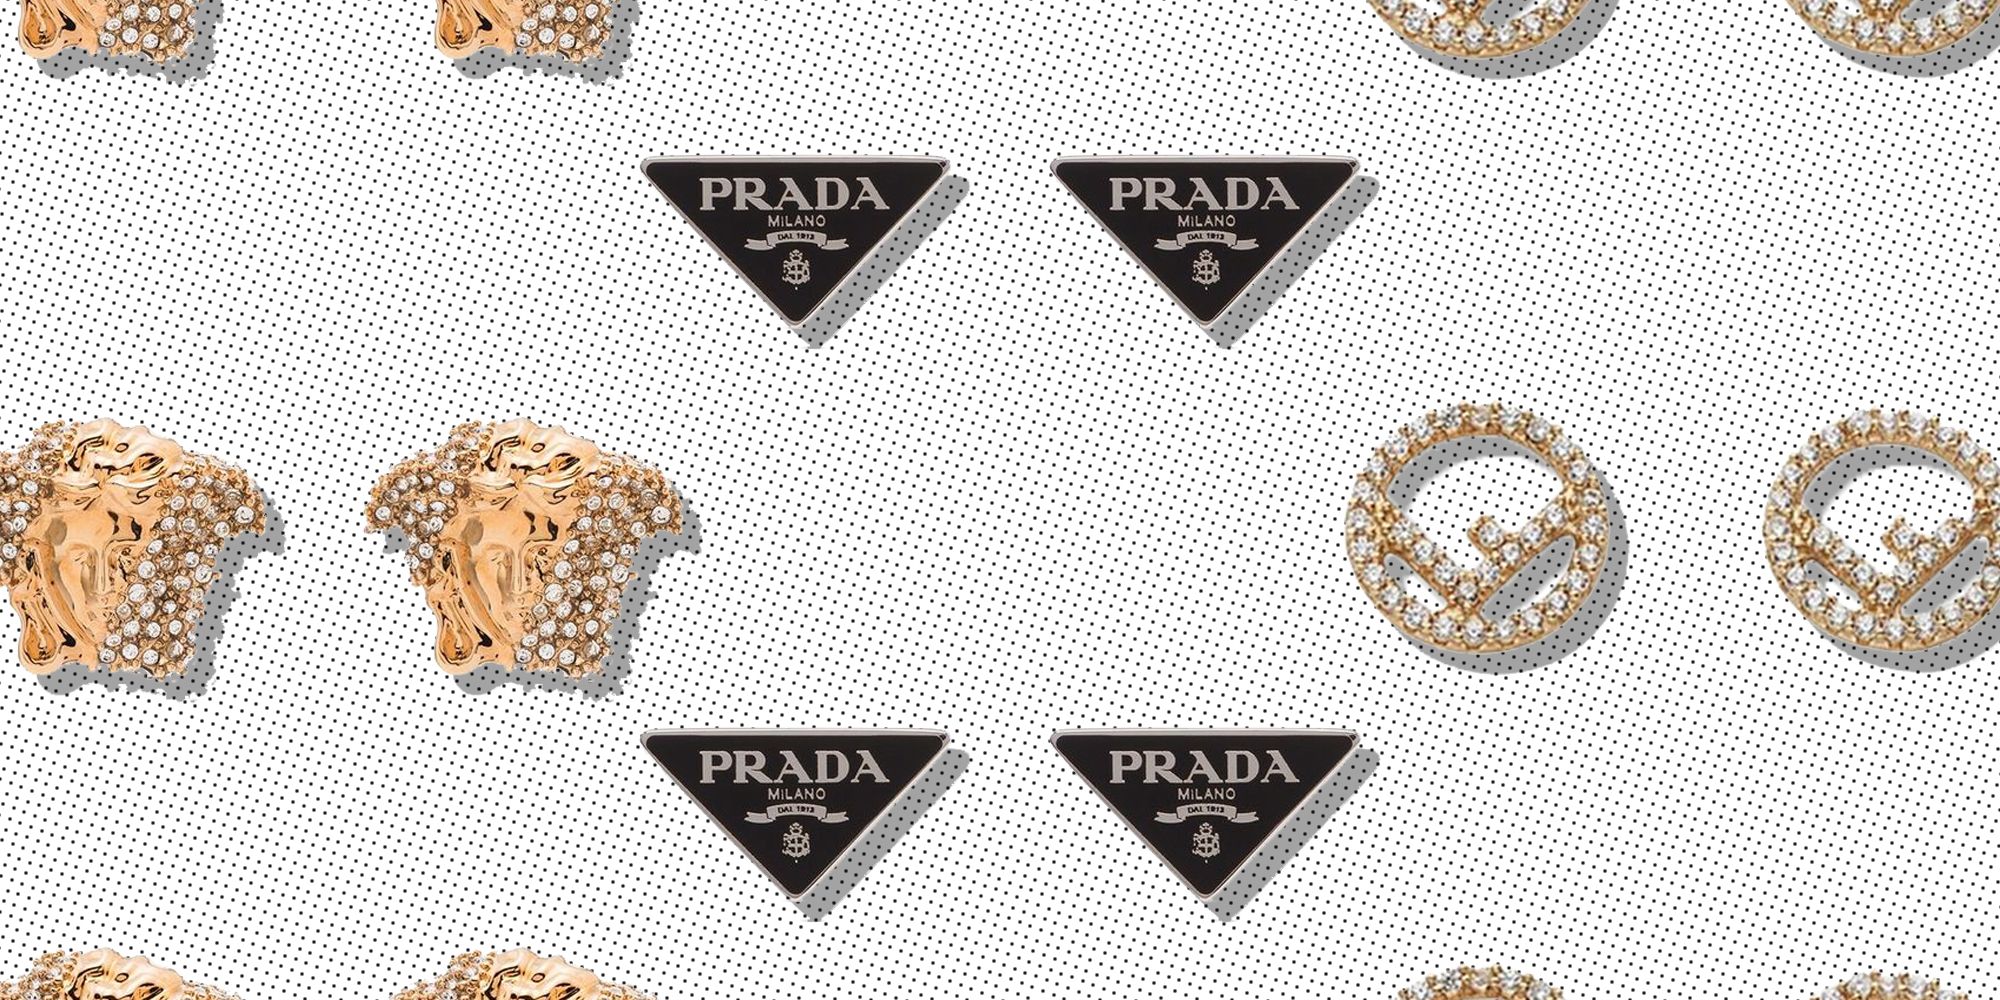 Designer Kundan Stone Stud Earrings For Party Wear or Wedding Wear